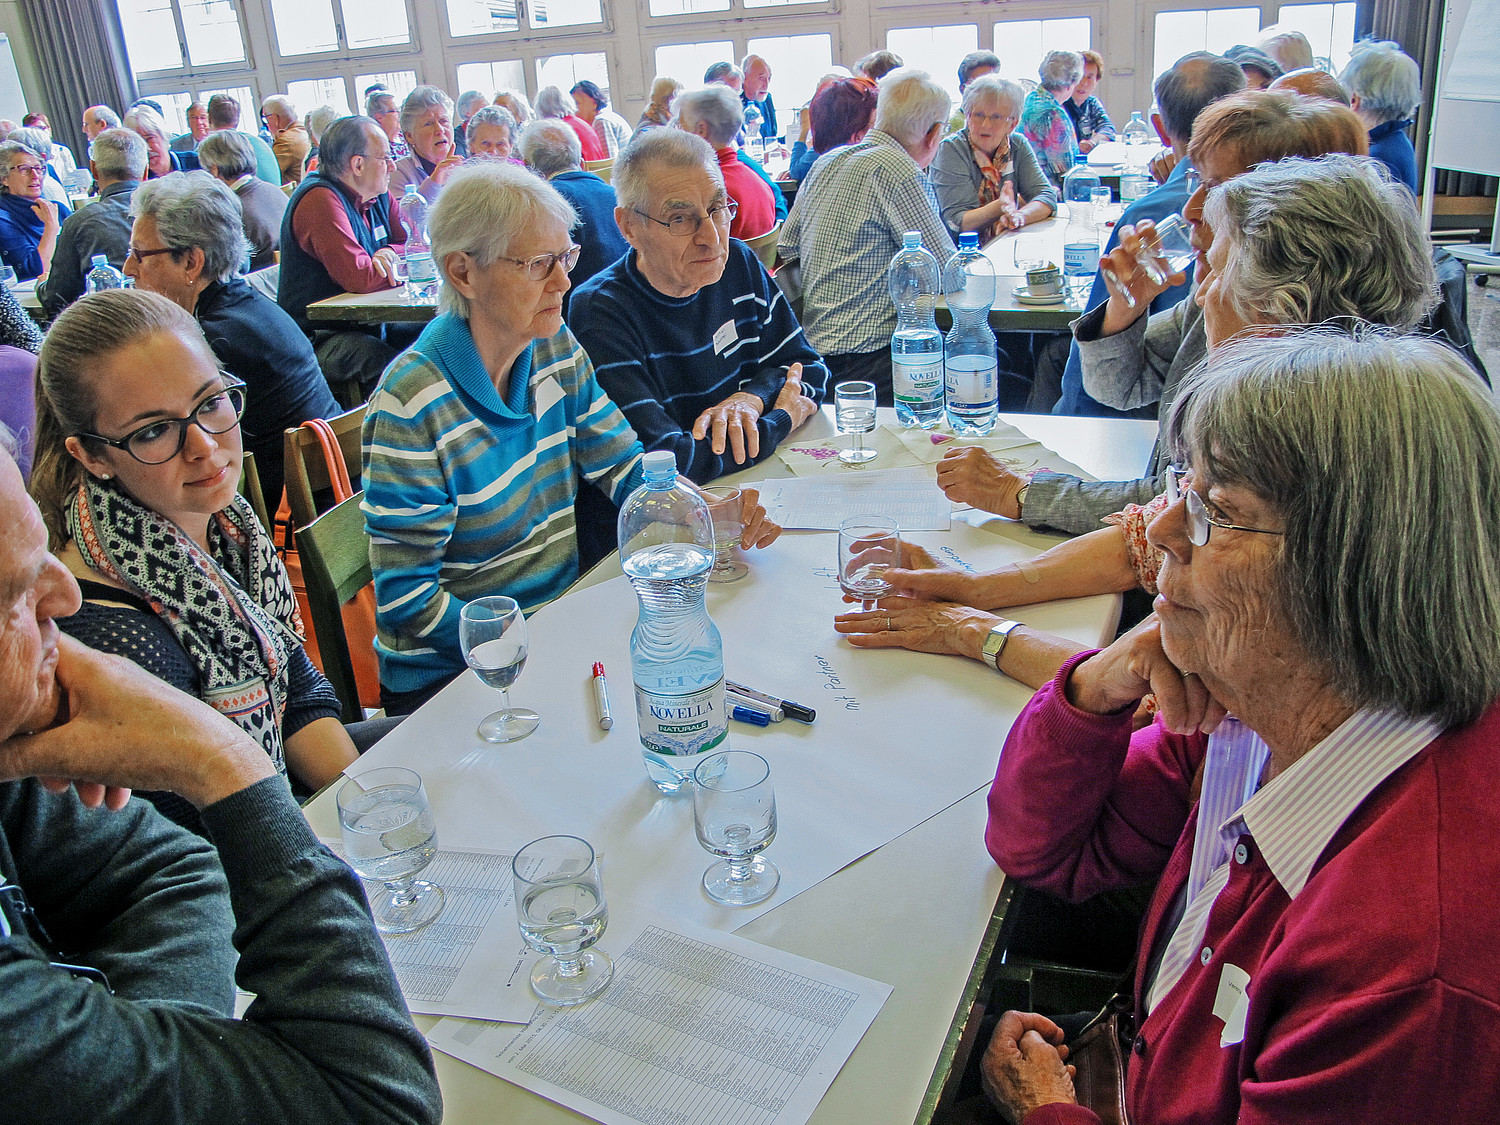 La Commune de Lichtensteig (SG) dans la vallée du Toggenburg se concentre systématiquement sur les ressources des personnes âgées.